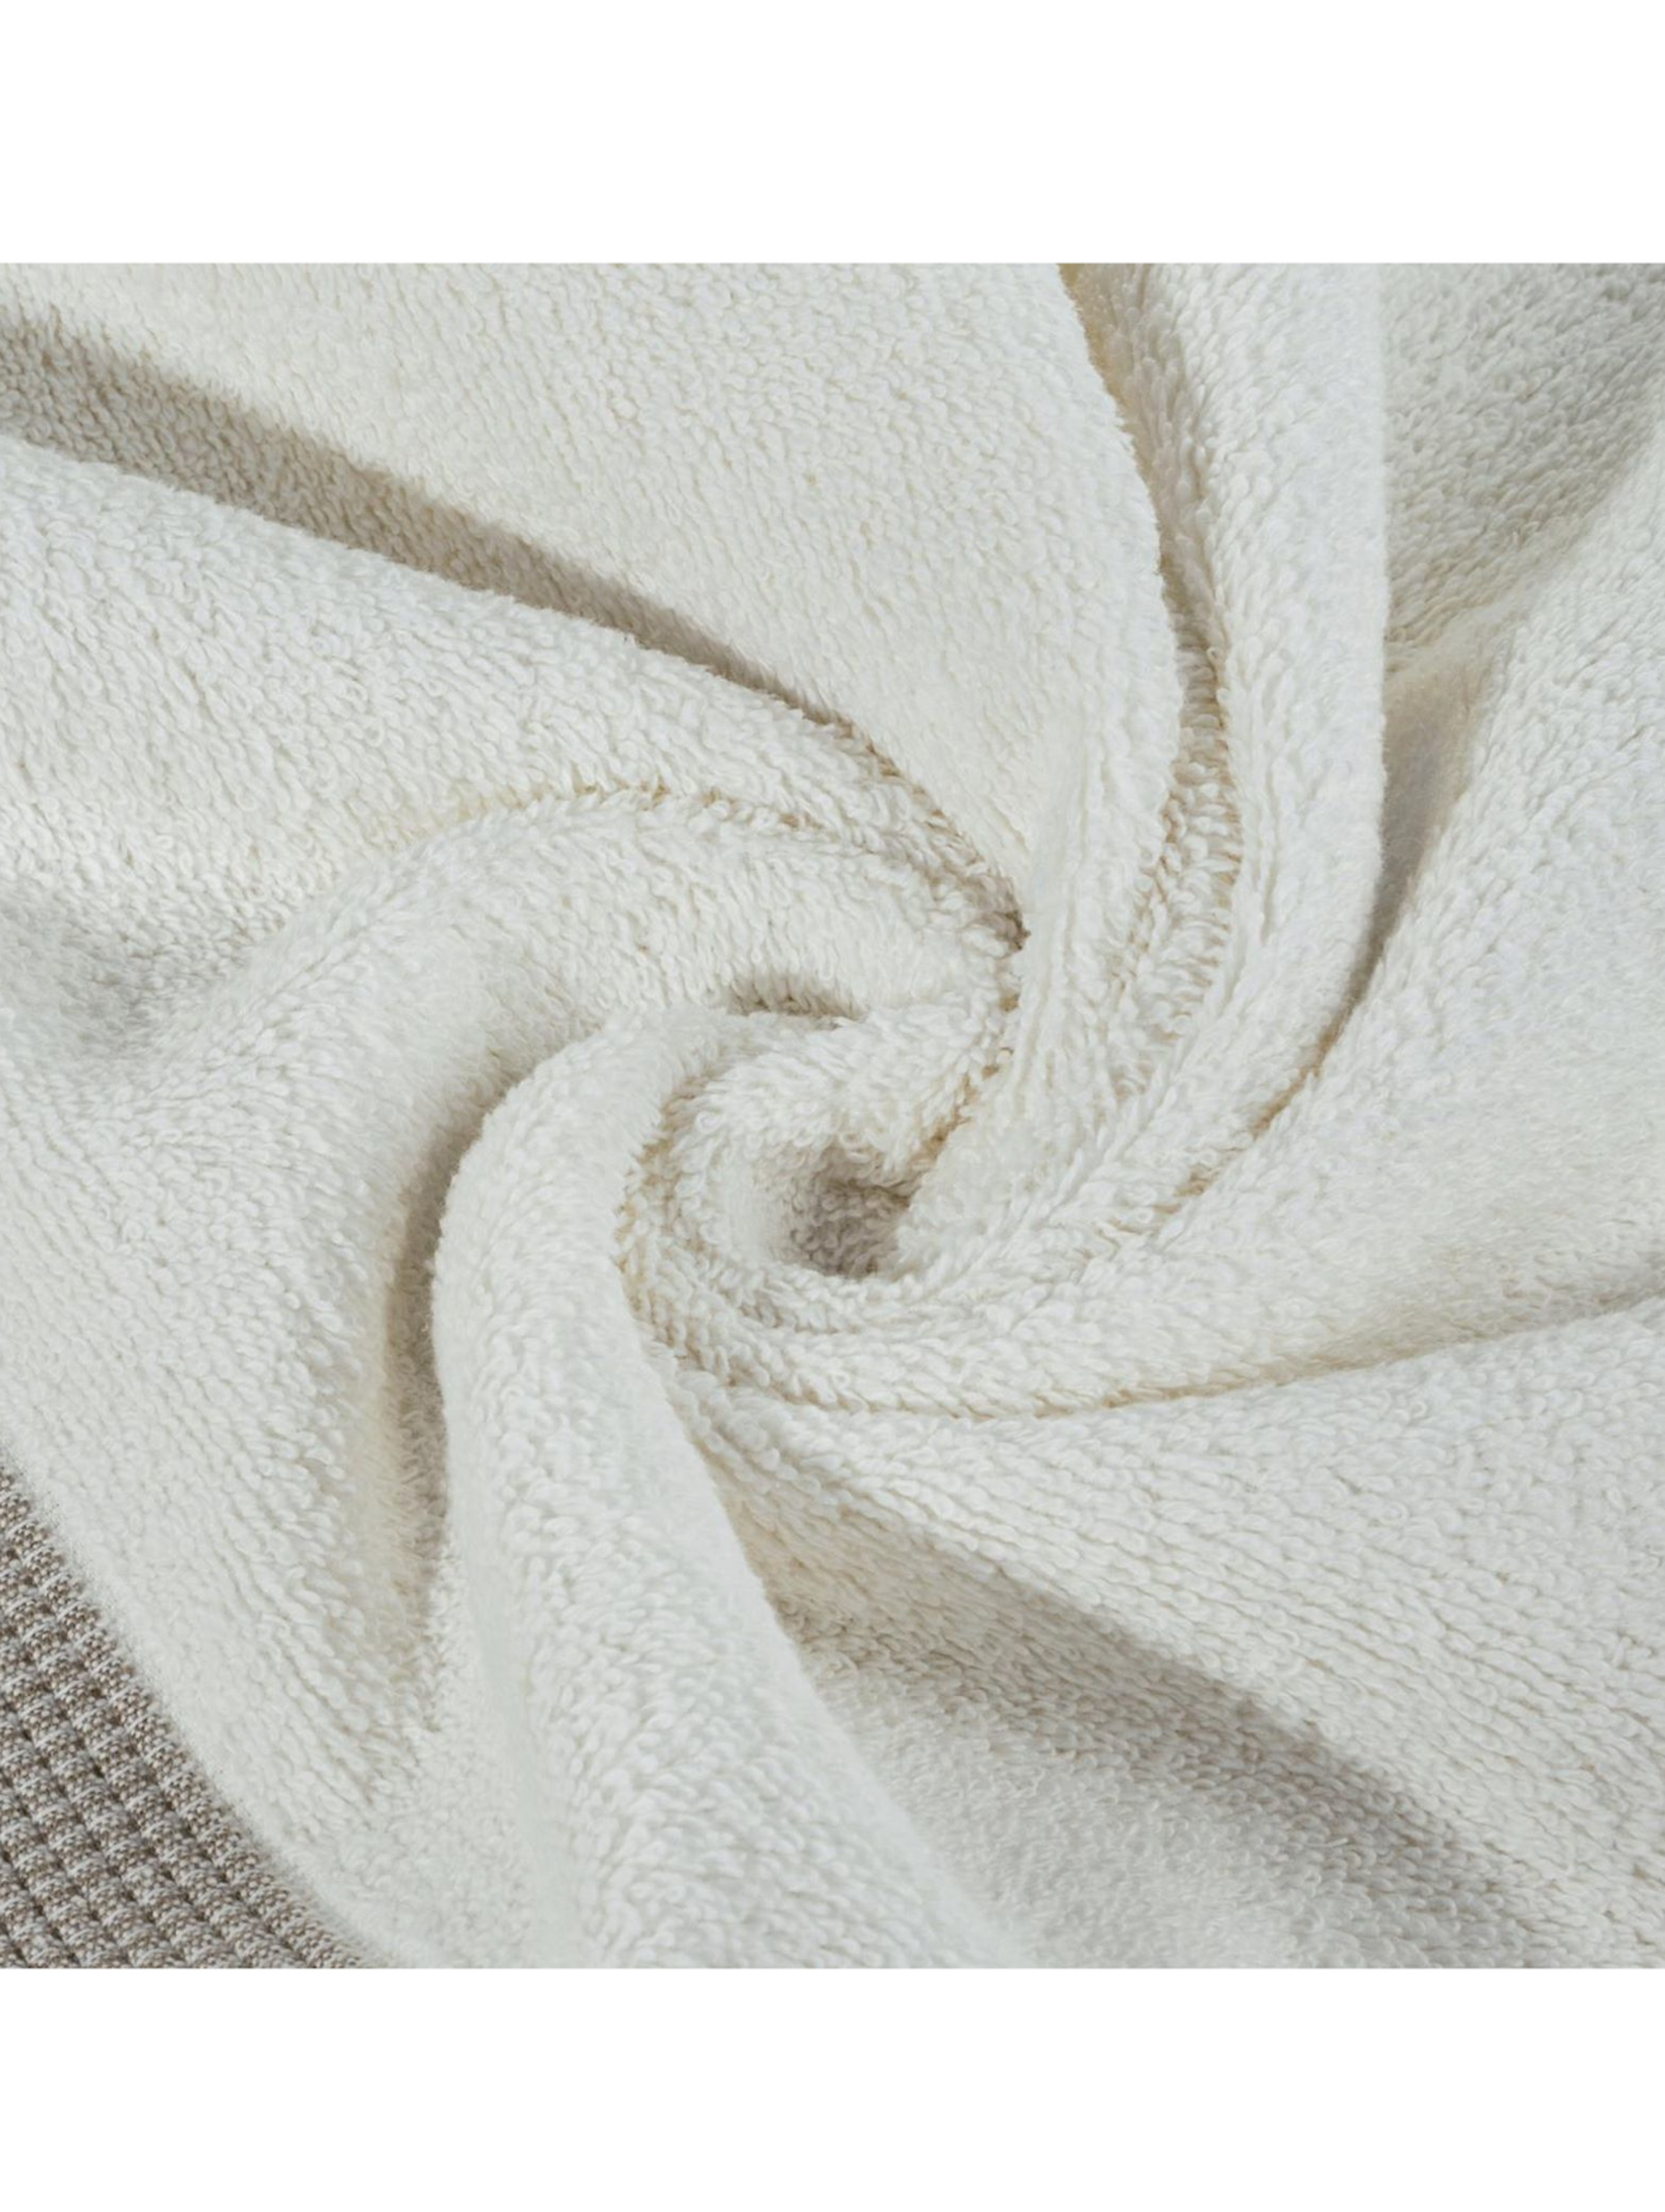 Ręcznik rodos (01) 70 x 140 cm kremowy